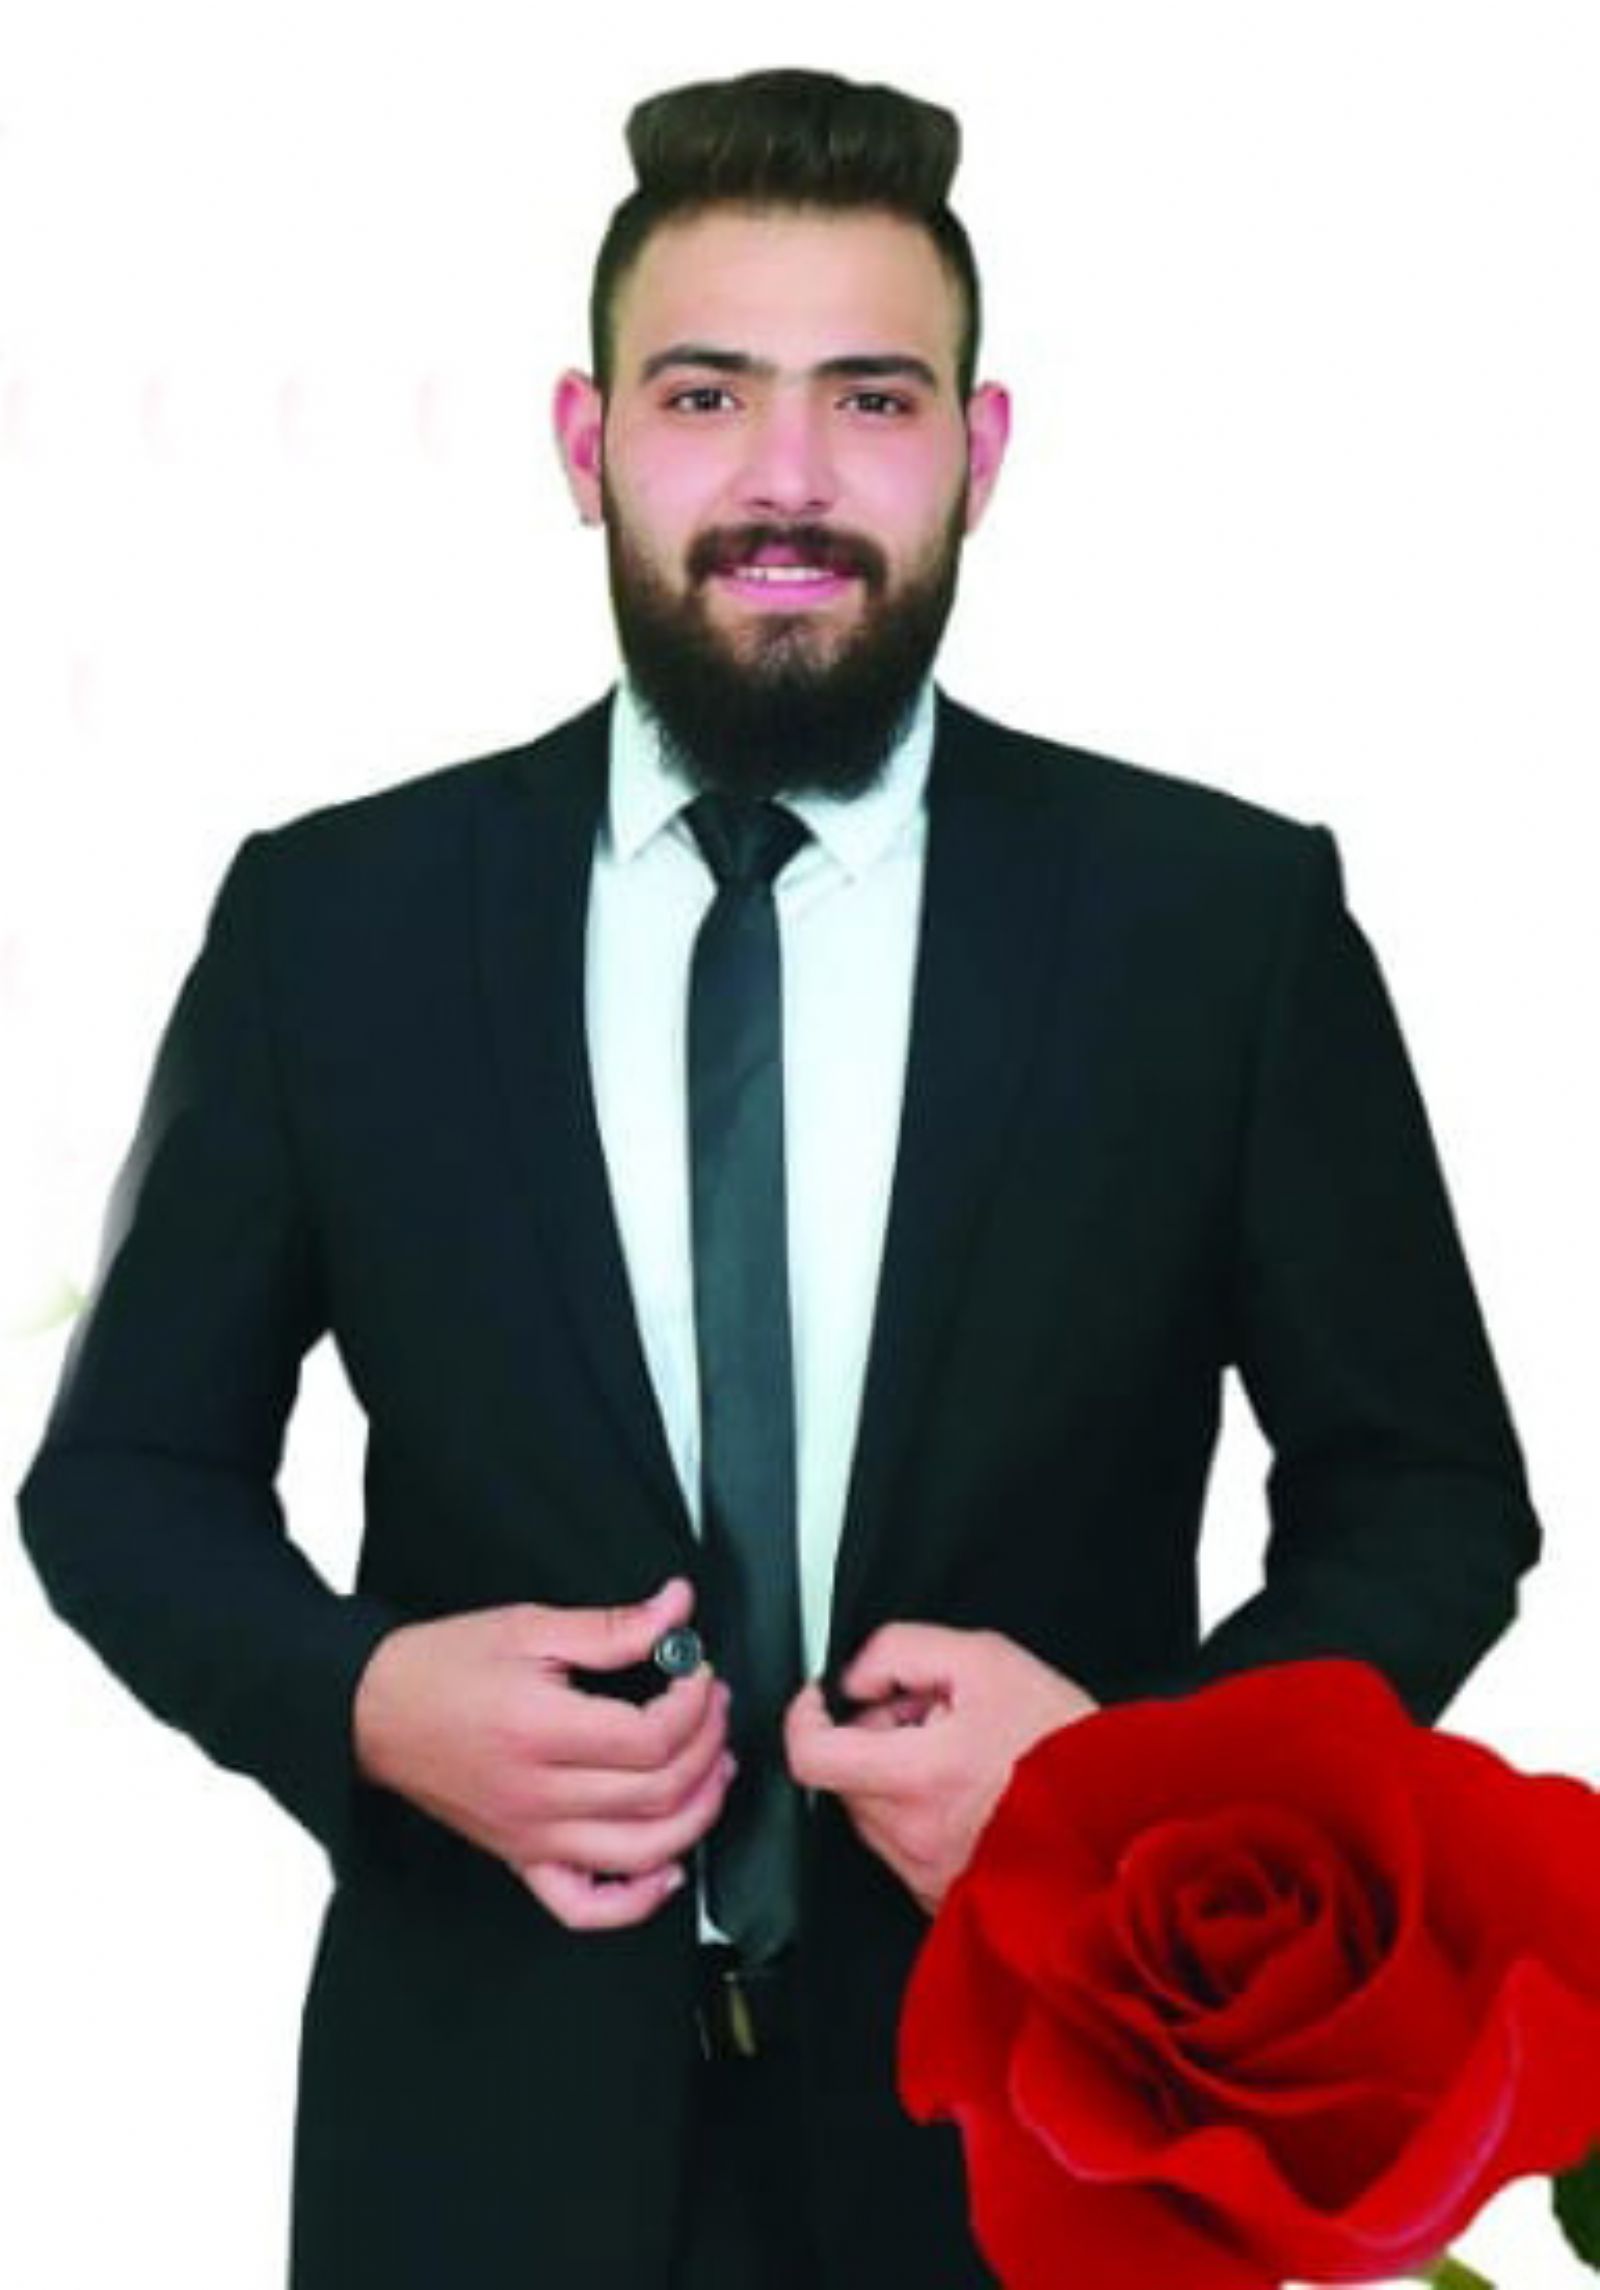 تهنئة بالزفاف للشاب الأديب "محمد خالد" سعيد آغا النمر